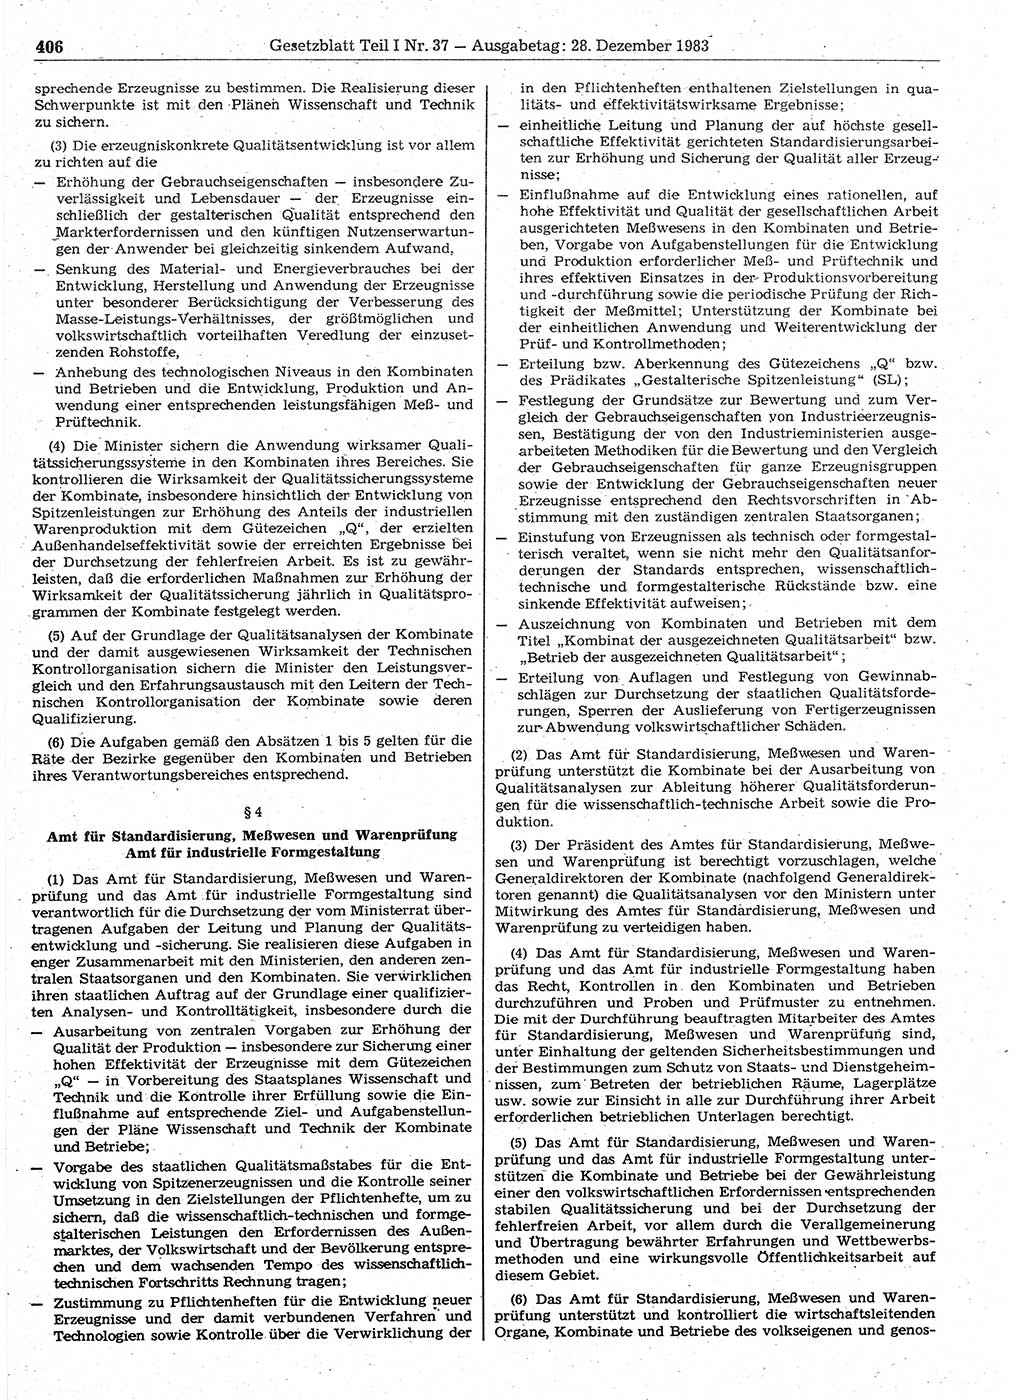 Gesetzblatt (GBl.) der Deutschen Demokratischen Republik (DDR) Teil Ⅰ 1983, Seite 406 (GBl. DDR Ⅰ 1983, S. 406)